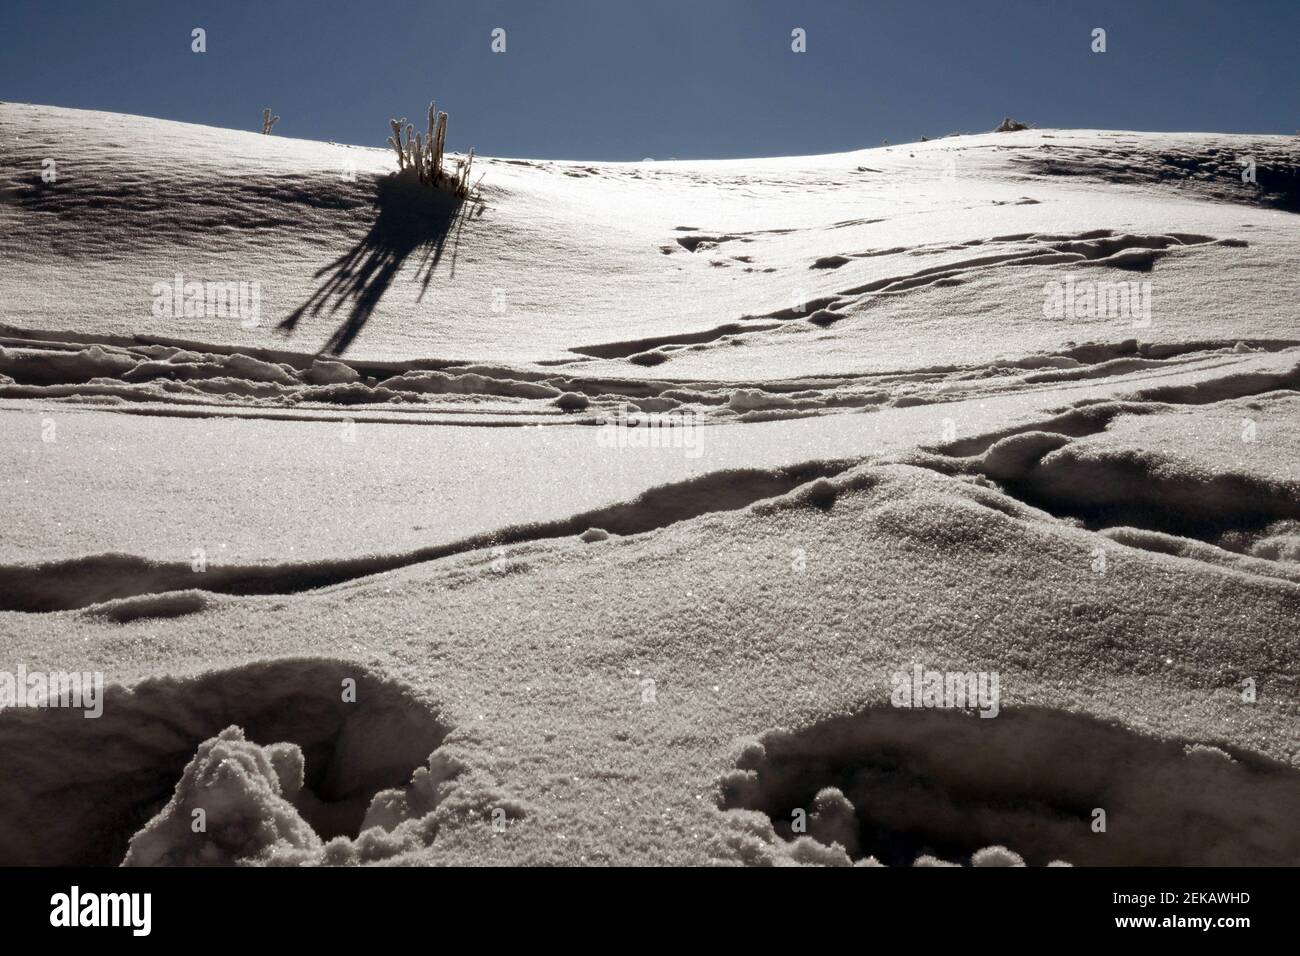 Tracce di neve in deriva, neve coperta scena astratta nella stagione invernale Foto Stock